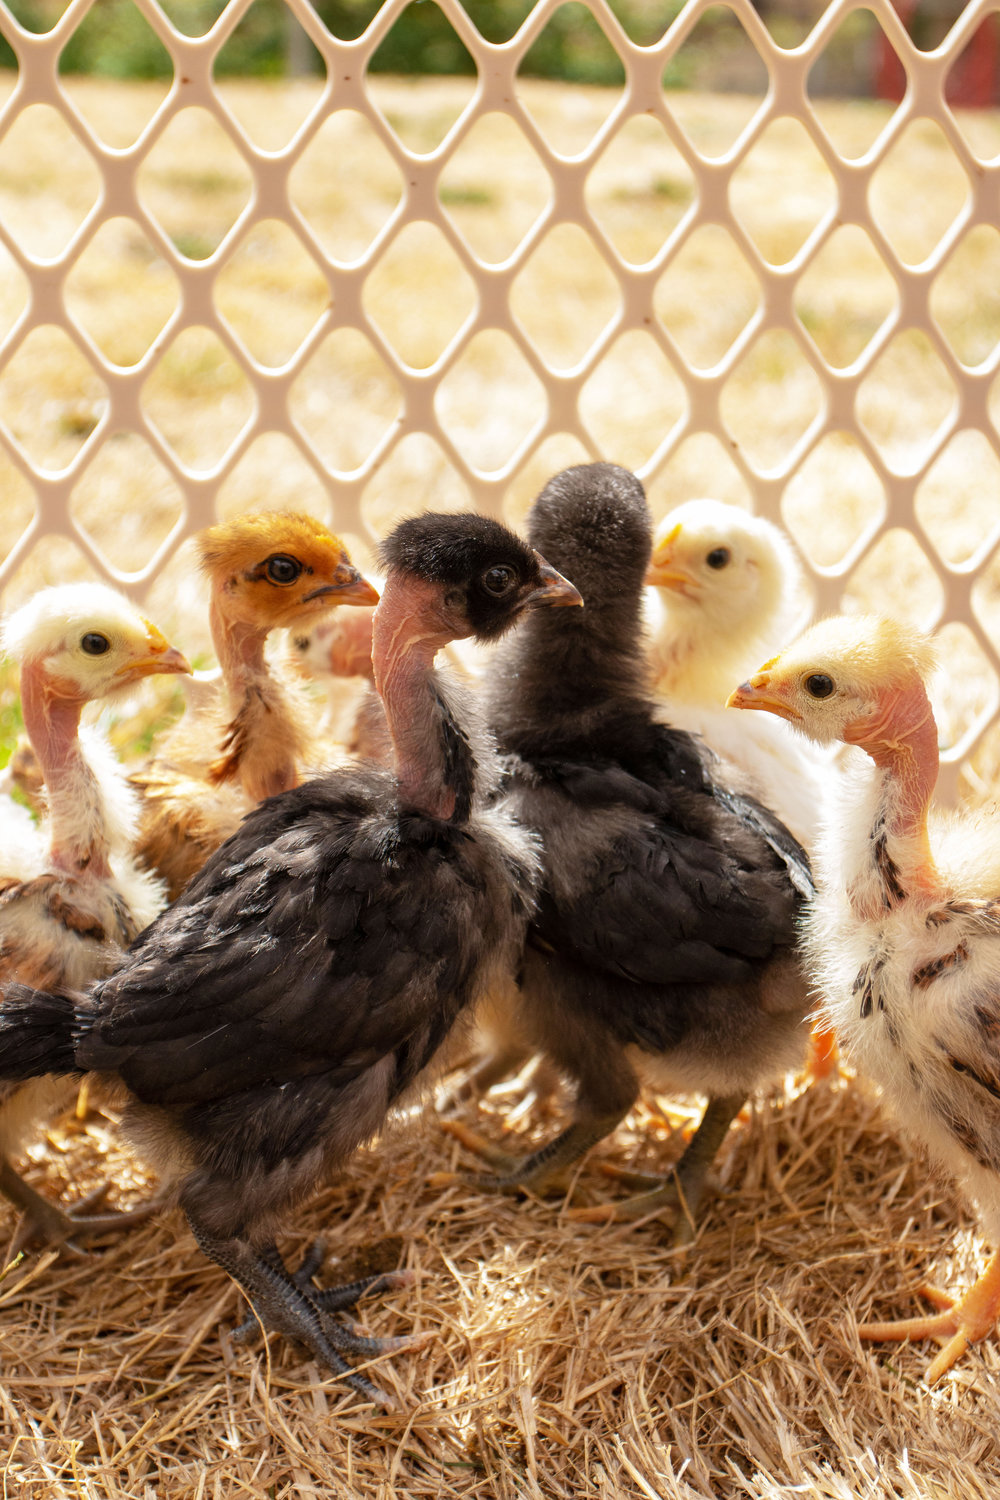 A group of naked neck chicks huddled together.